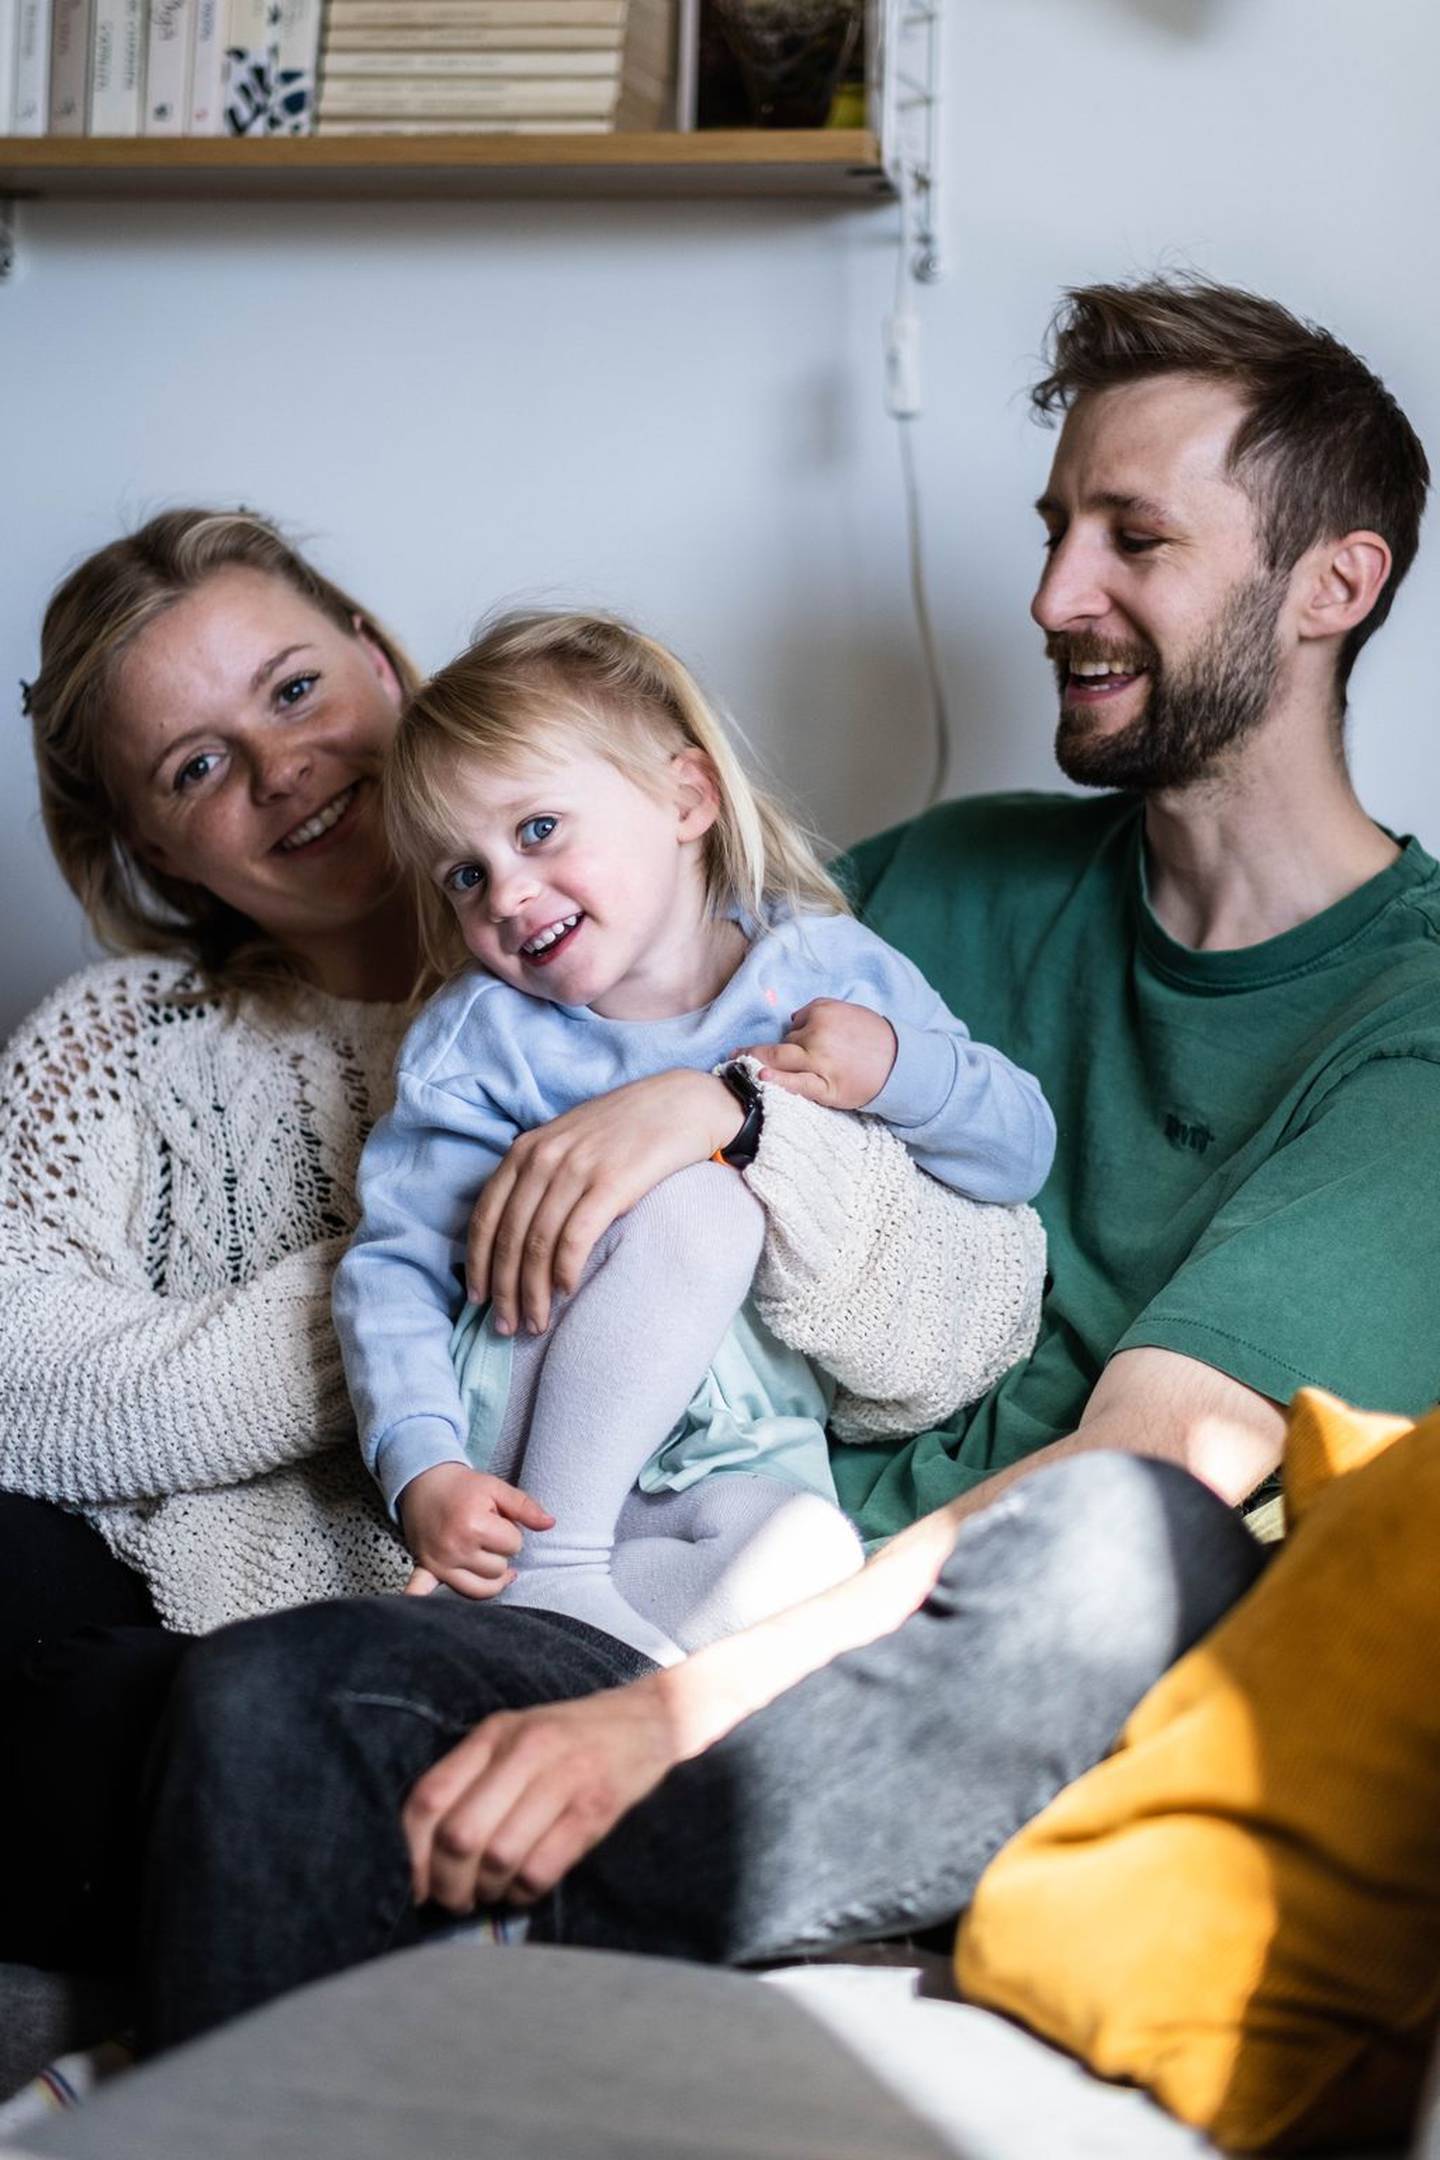 Martine Høy Berg og Tore Bergo Simensen har også fått en datter.

Foto: Hanna Skotheim/Fontene